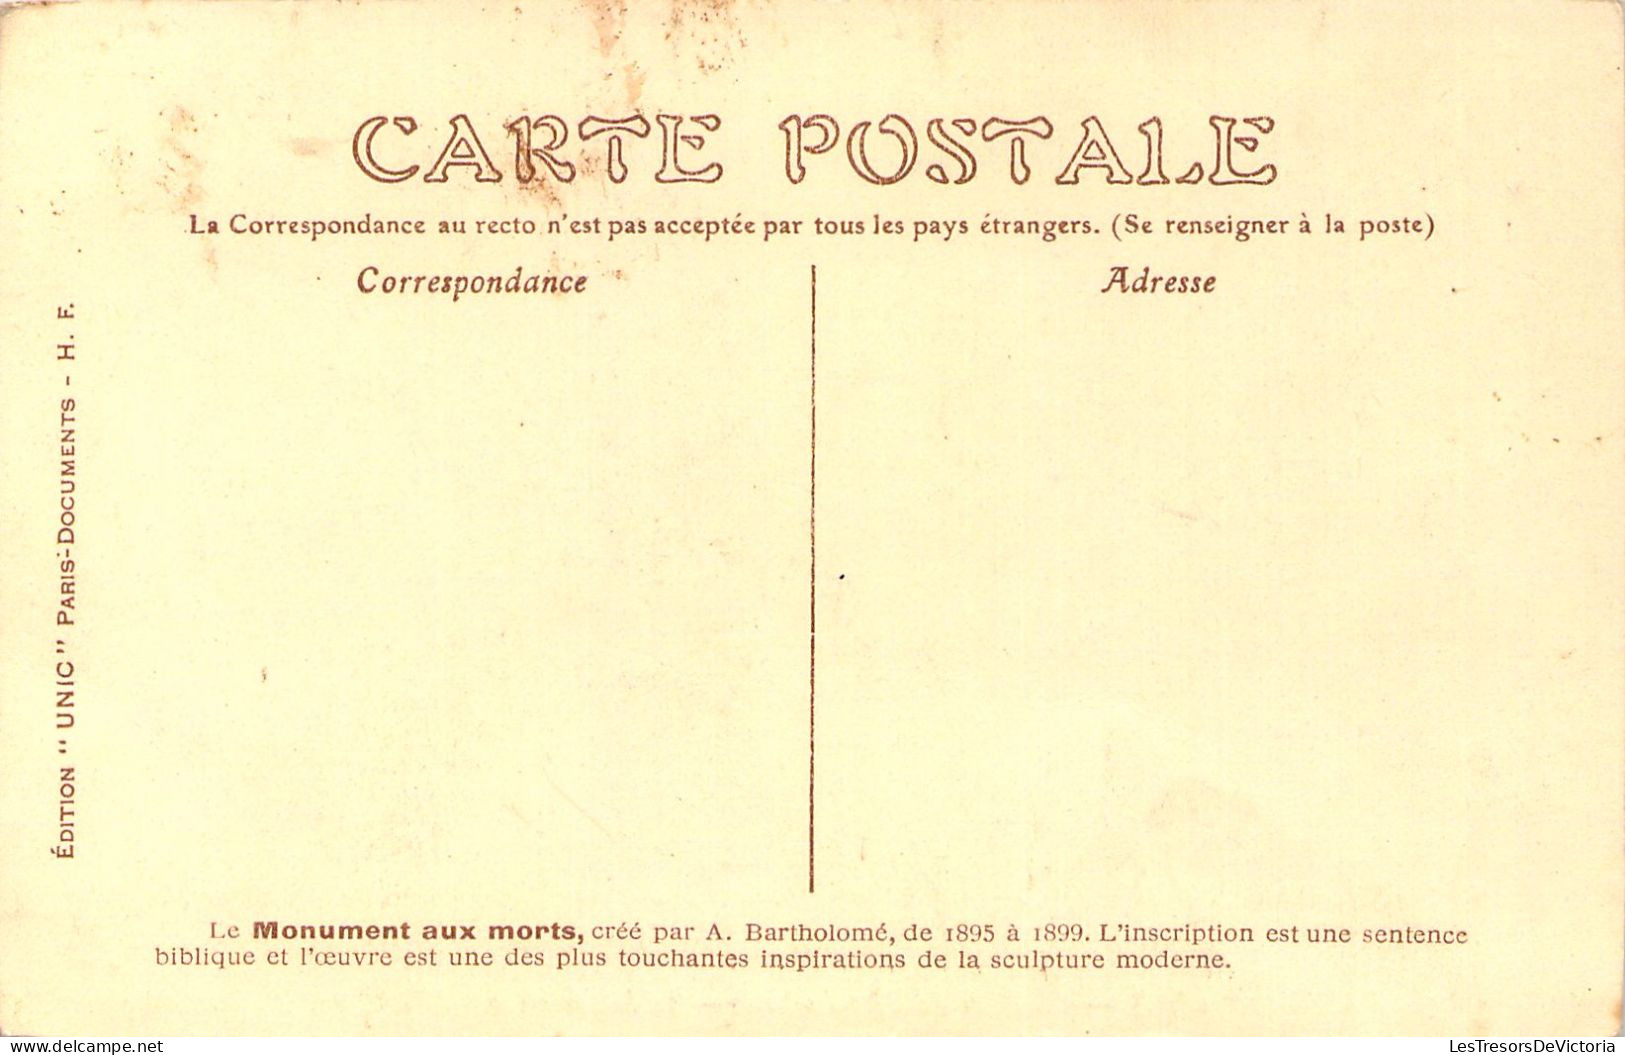 FRANCE - 75 - PARIS - Cimetière Du Père Lachaise - Le Monument Aux Morts - Carte Postale Ancienne - Sonstige Sehenswürdigkeiten